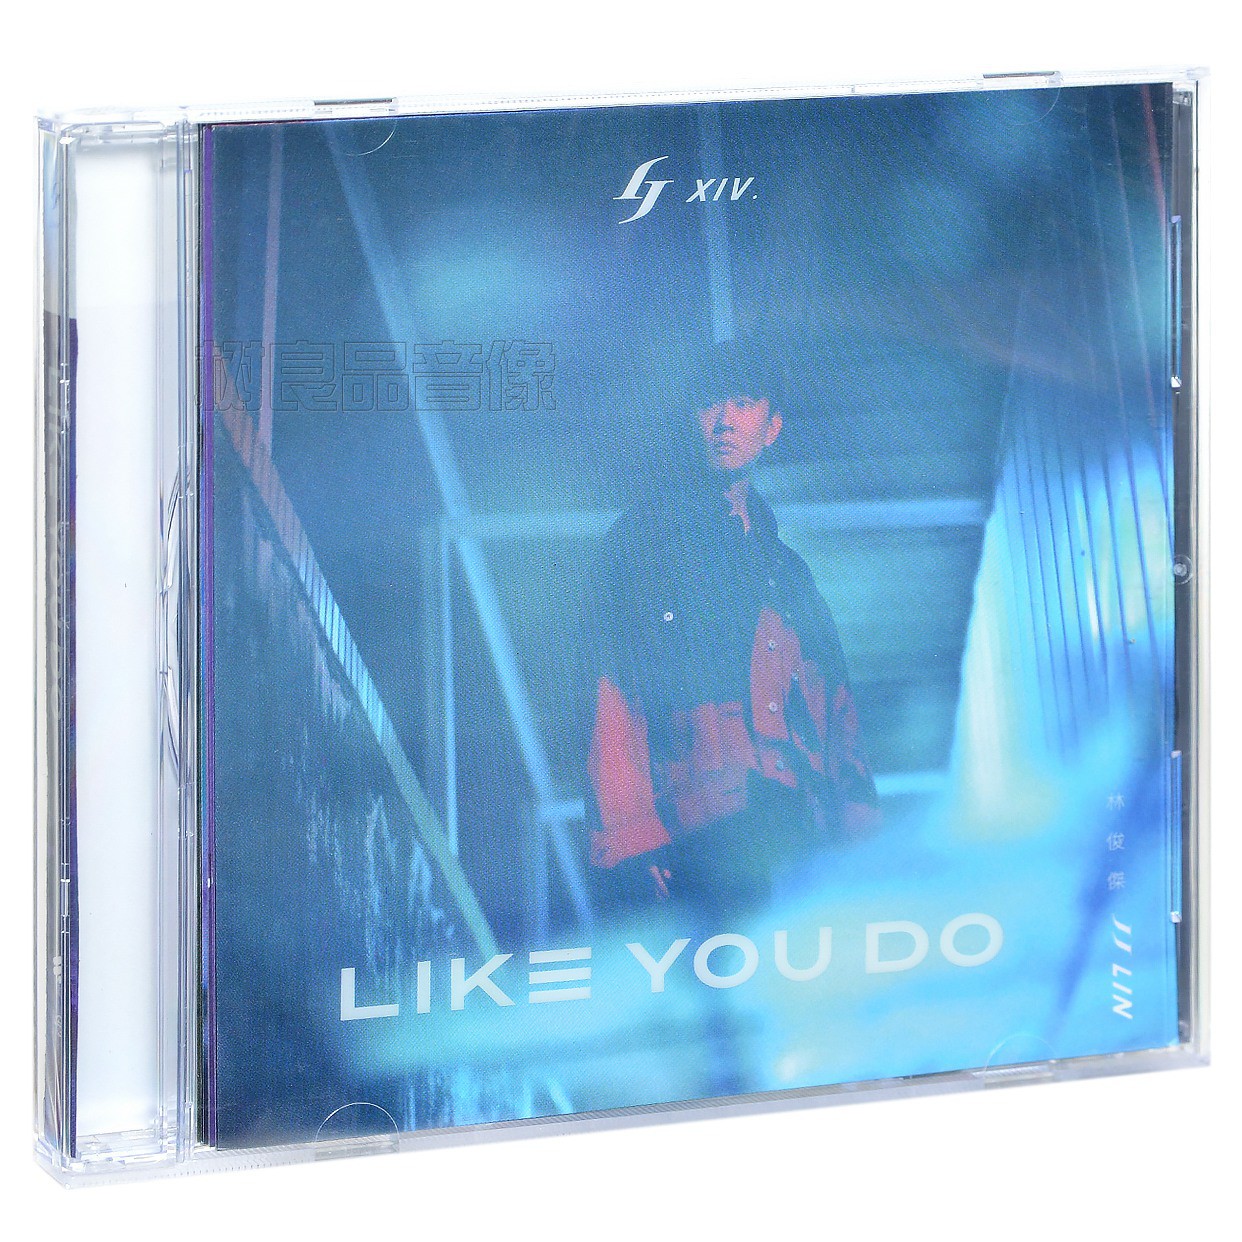 正版华纳唱片 林俊杰专辑 Like You Do 英文EP 幸存者 如你 CD碟